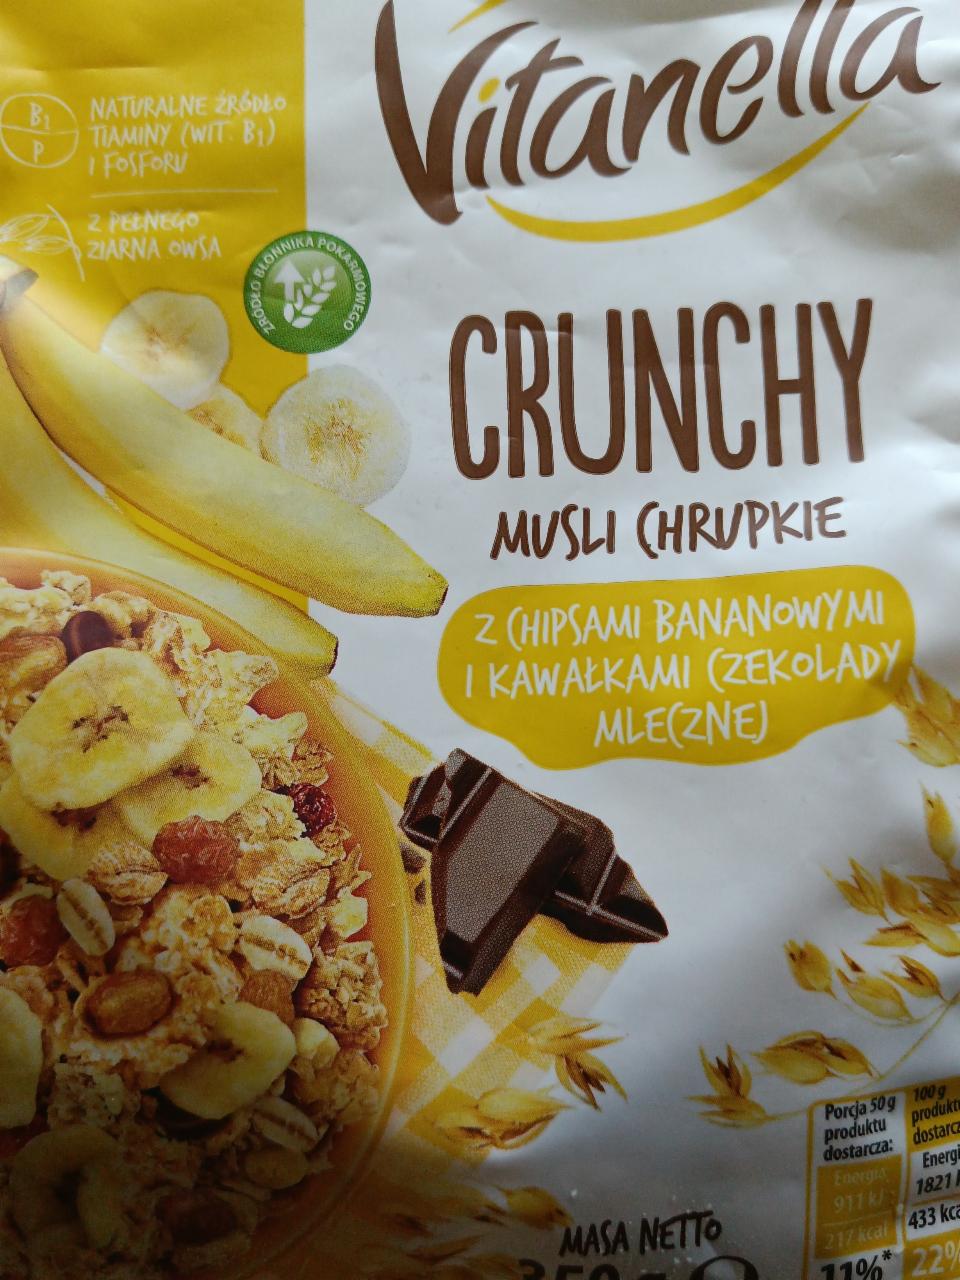 Fotografie - Crunchy Musli Chrupkie z Chipsami Bananowymi i Kawałkami Czekolady Mlecznej Vitanella